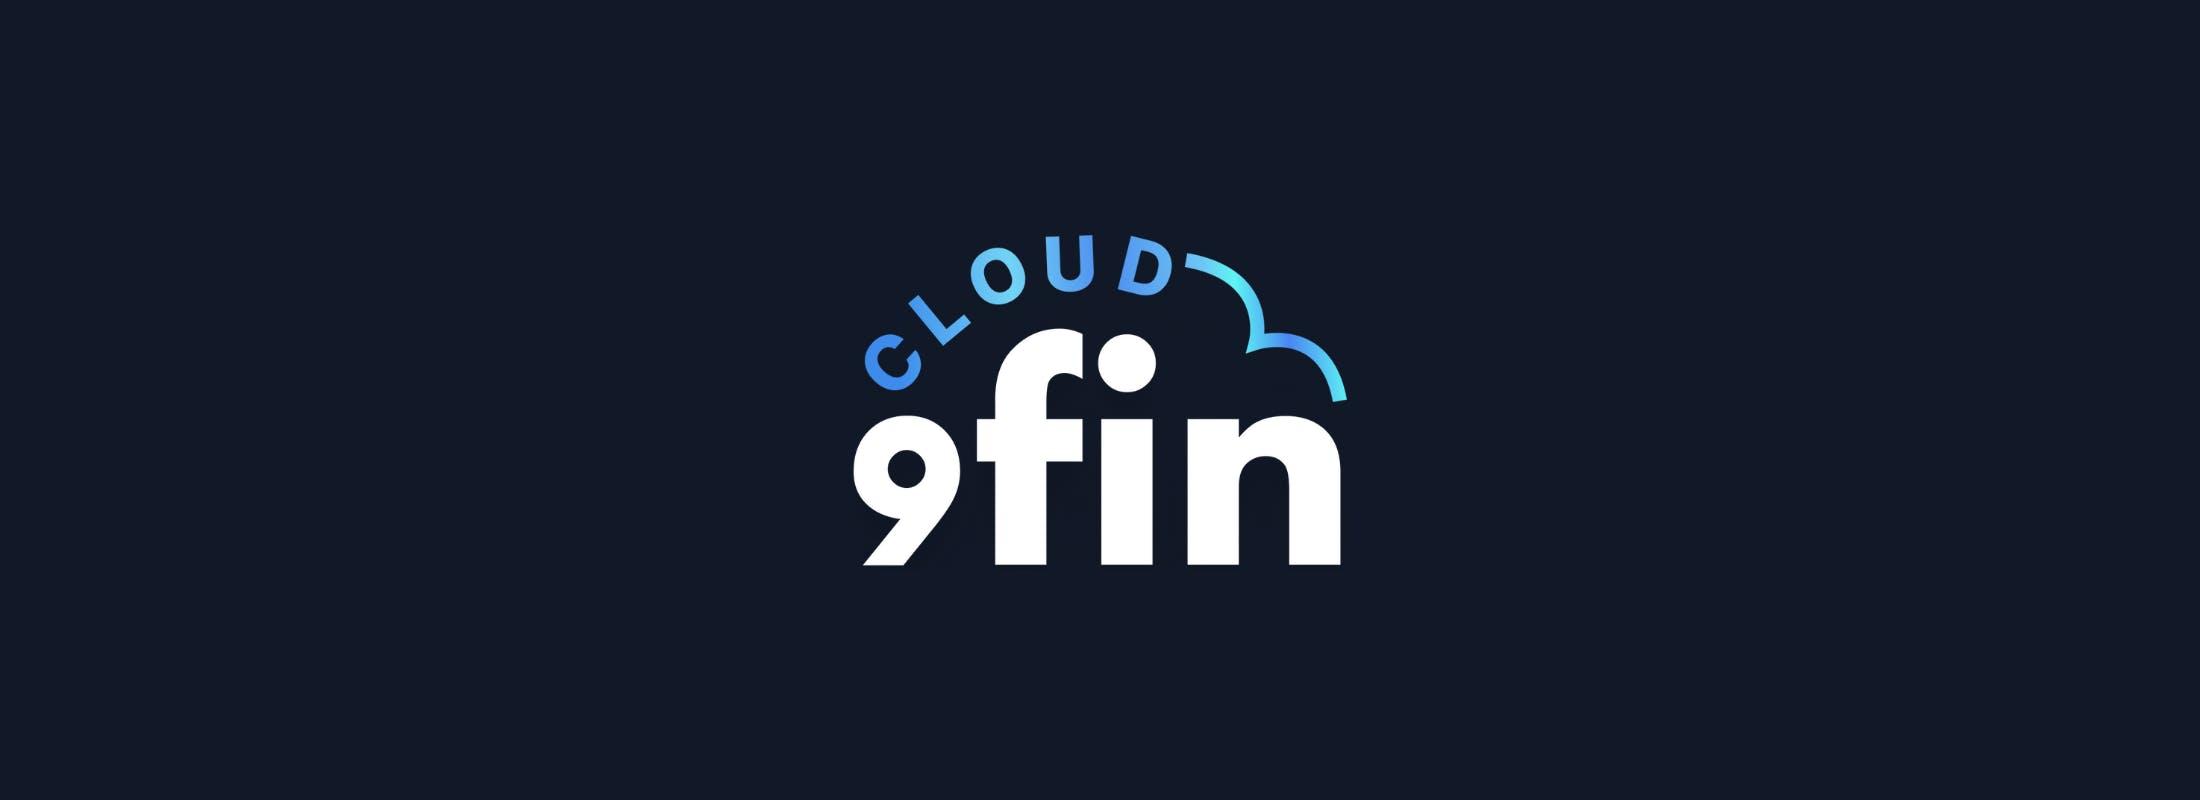 Cloud 9fin — Intrum in the red